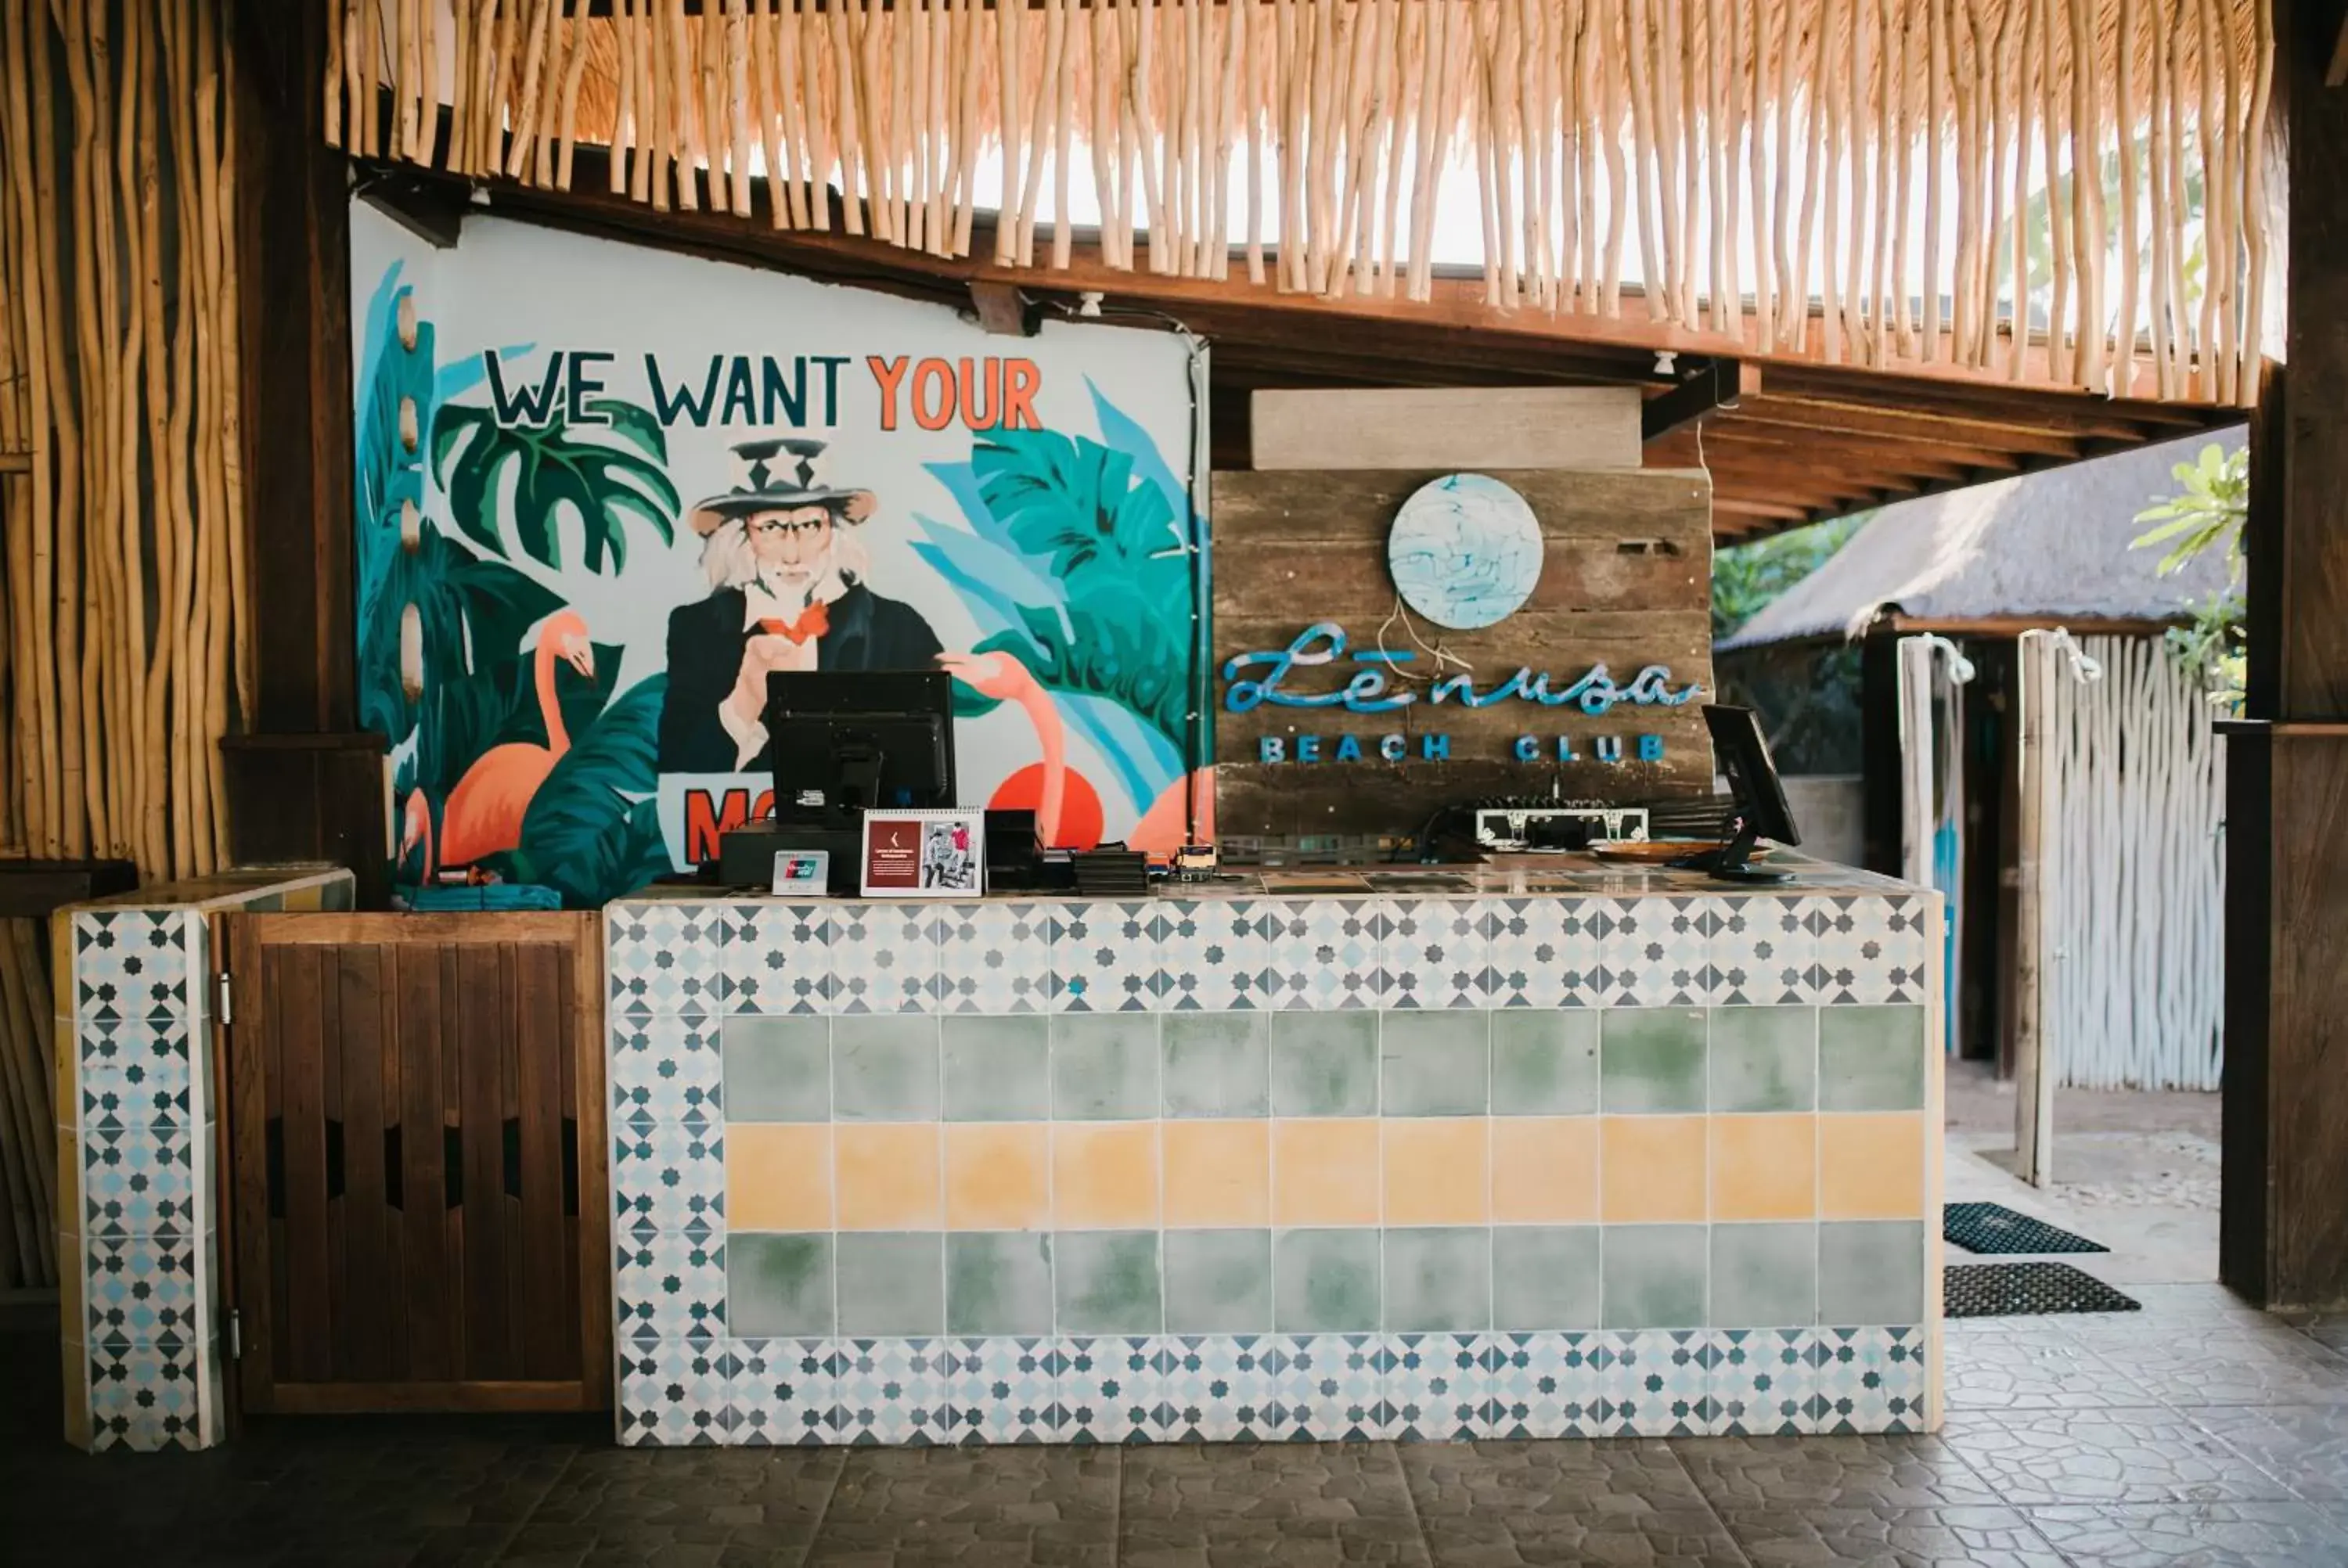 Lounge or bar in Le Nusa Beach Club